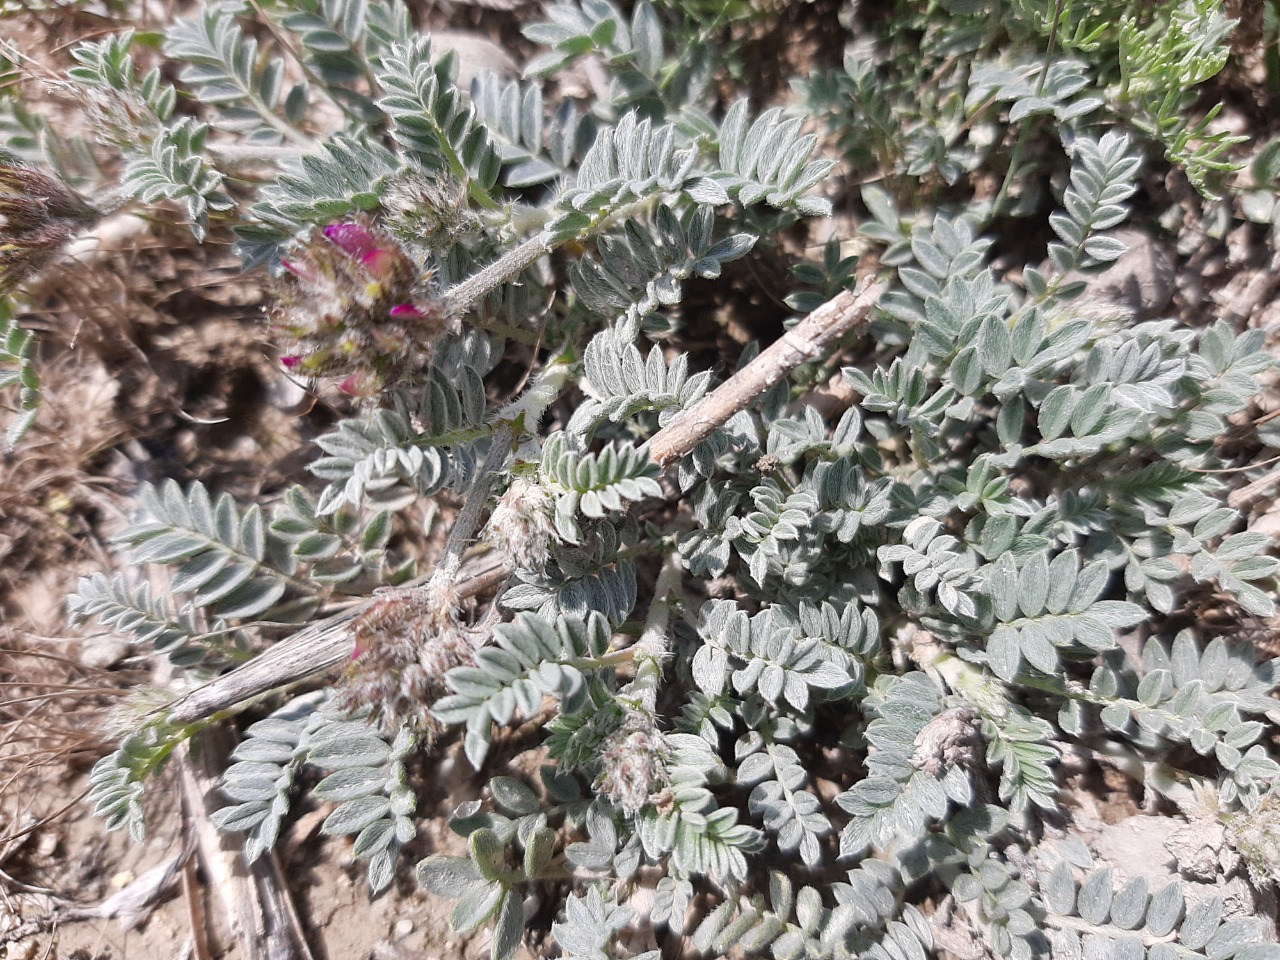 Astragalus mesogitanus